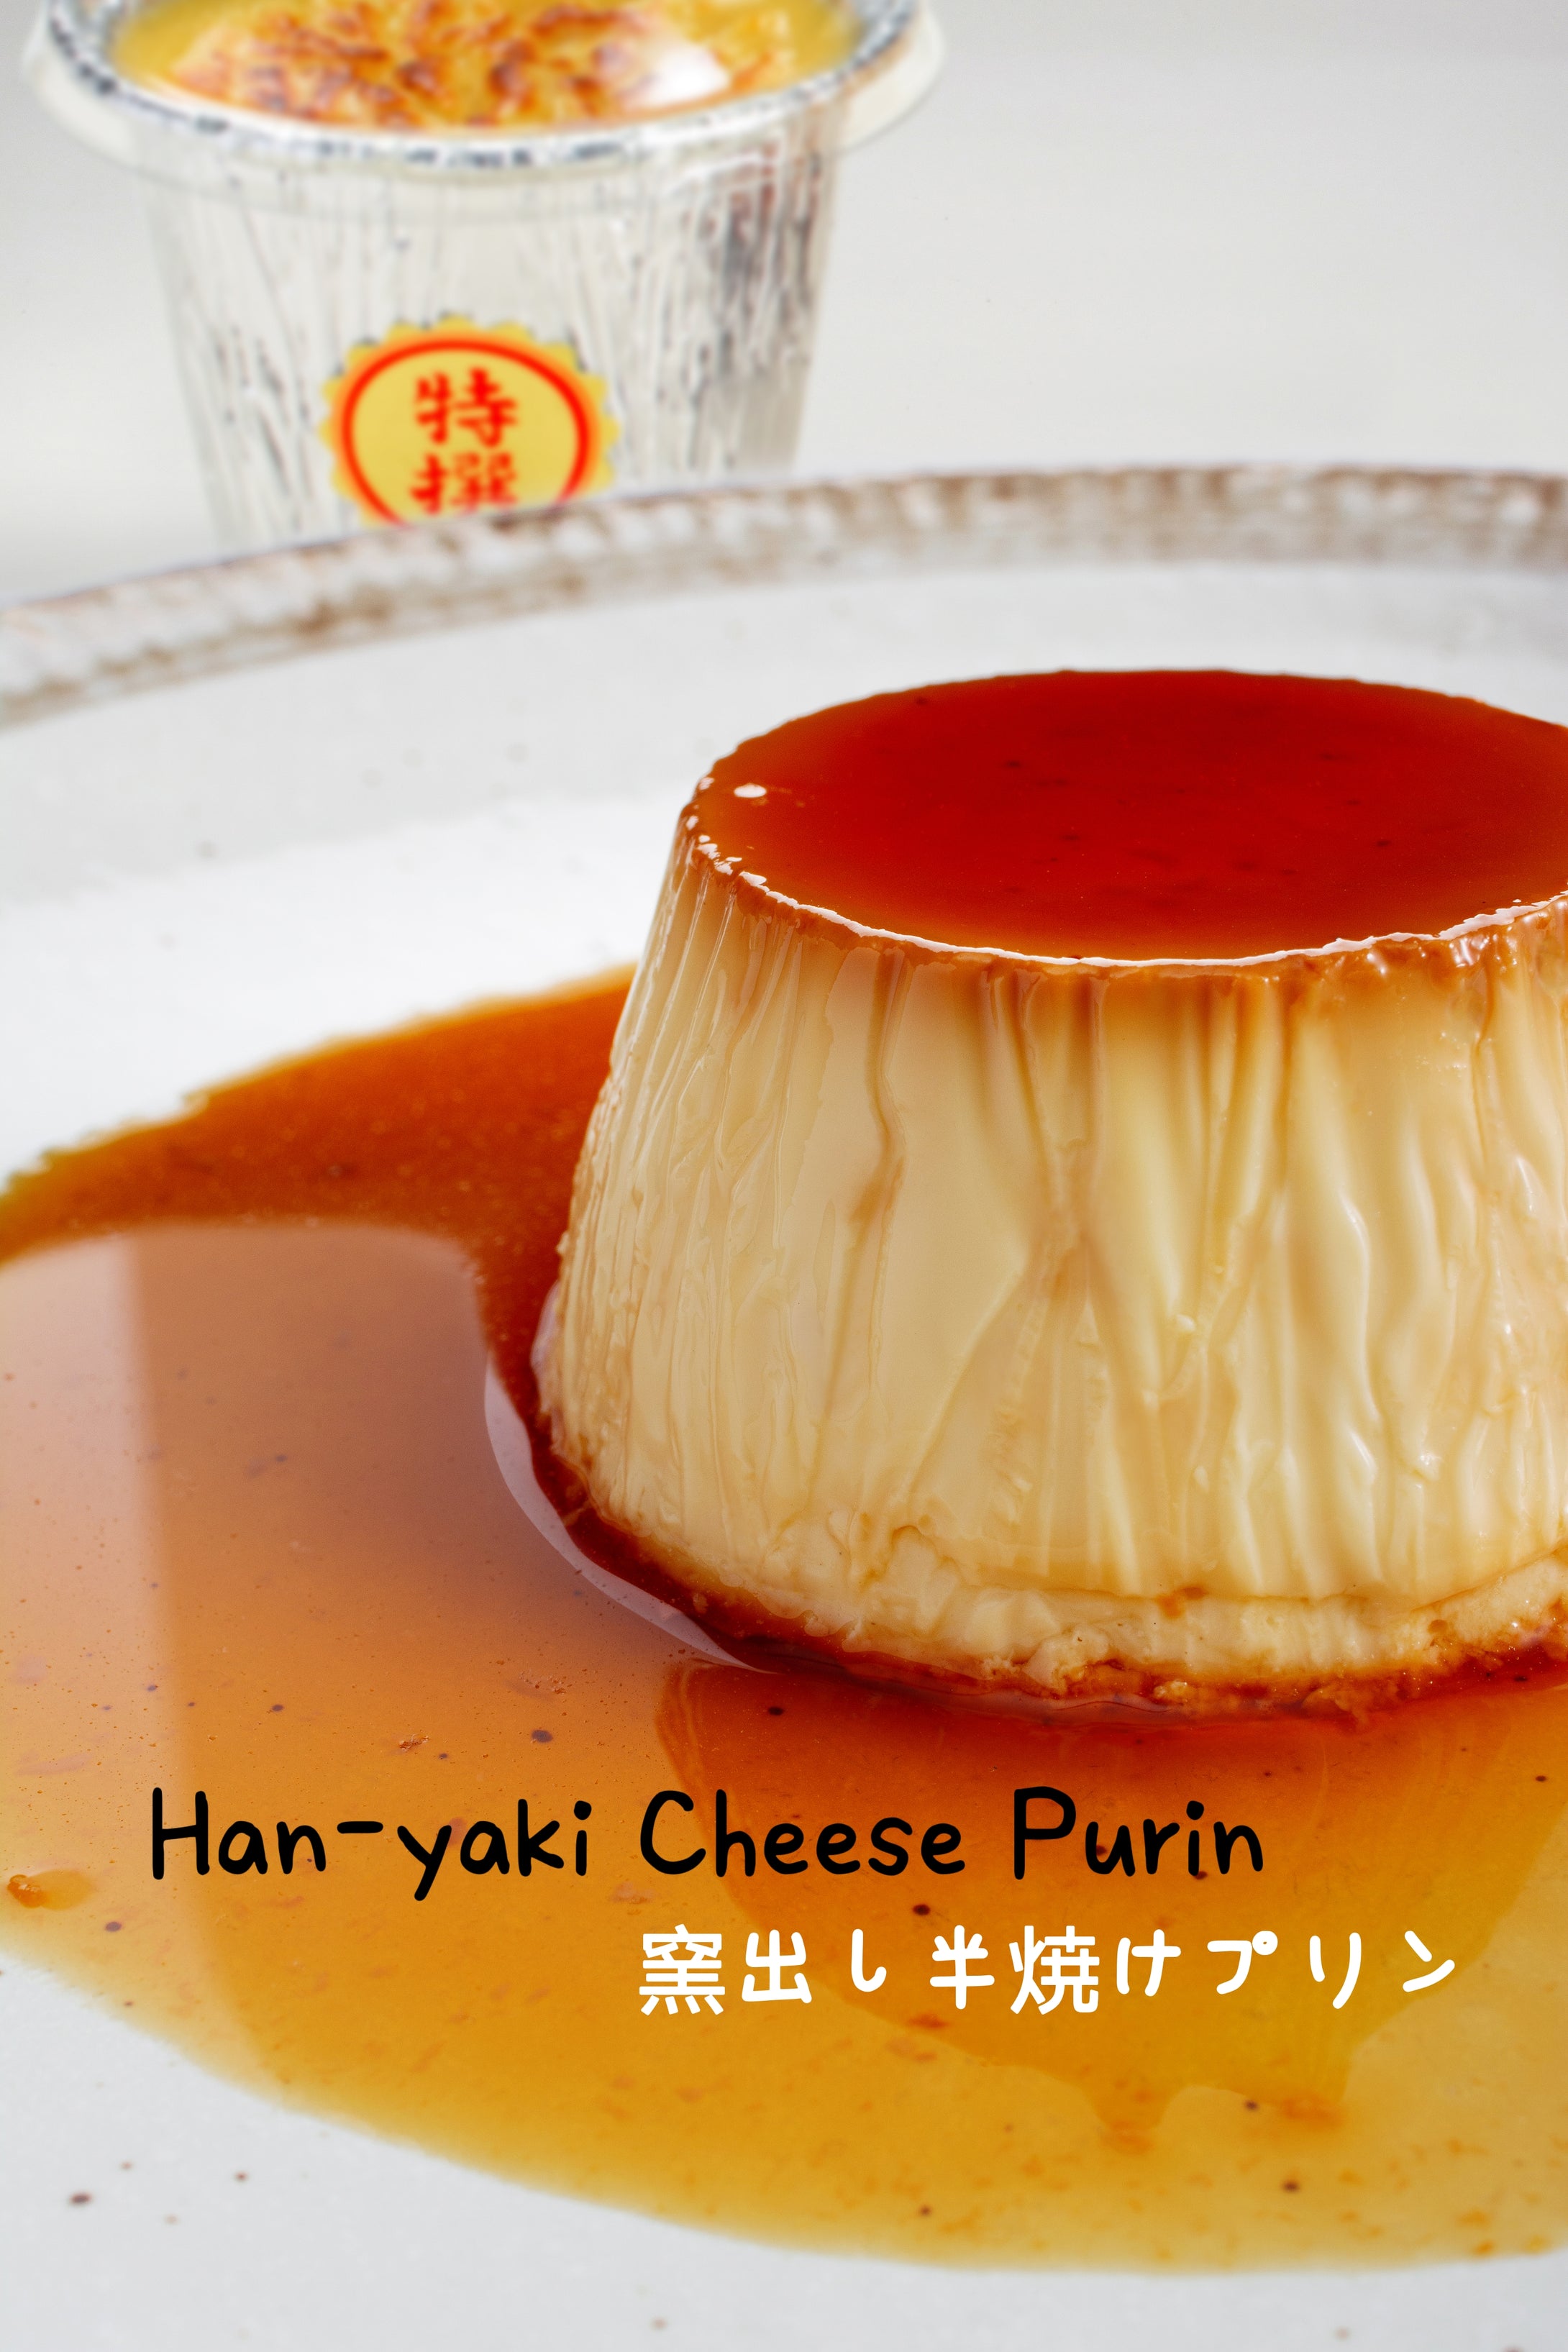 Han-yaki Cheese Purin 窯出し半焼けプリン (13s)